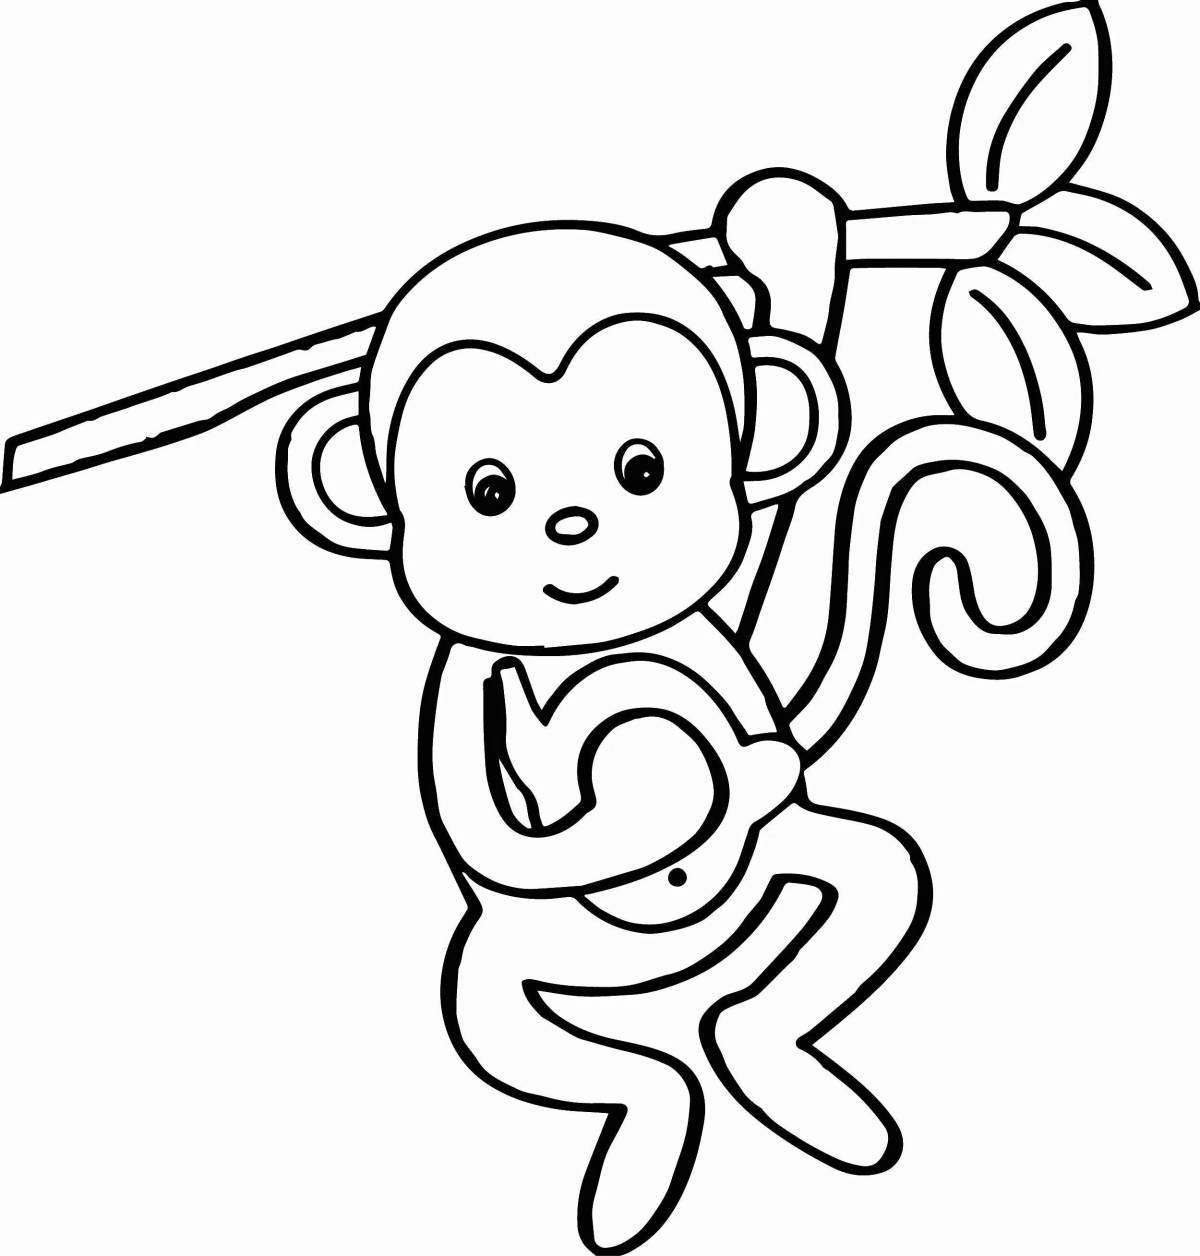 Раскраска забавная фигурка обезьяны